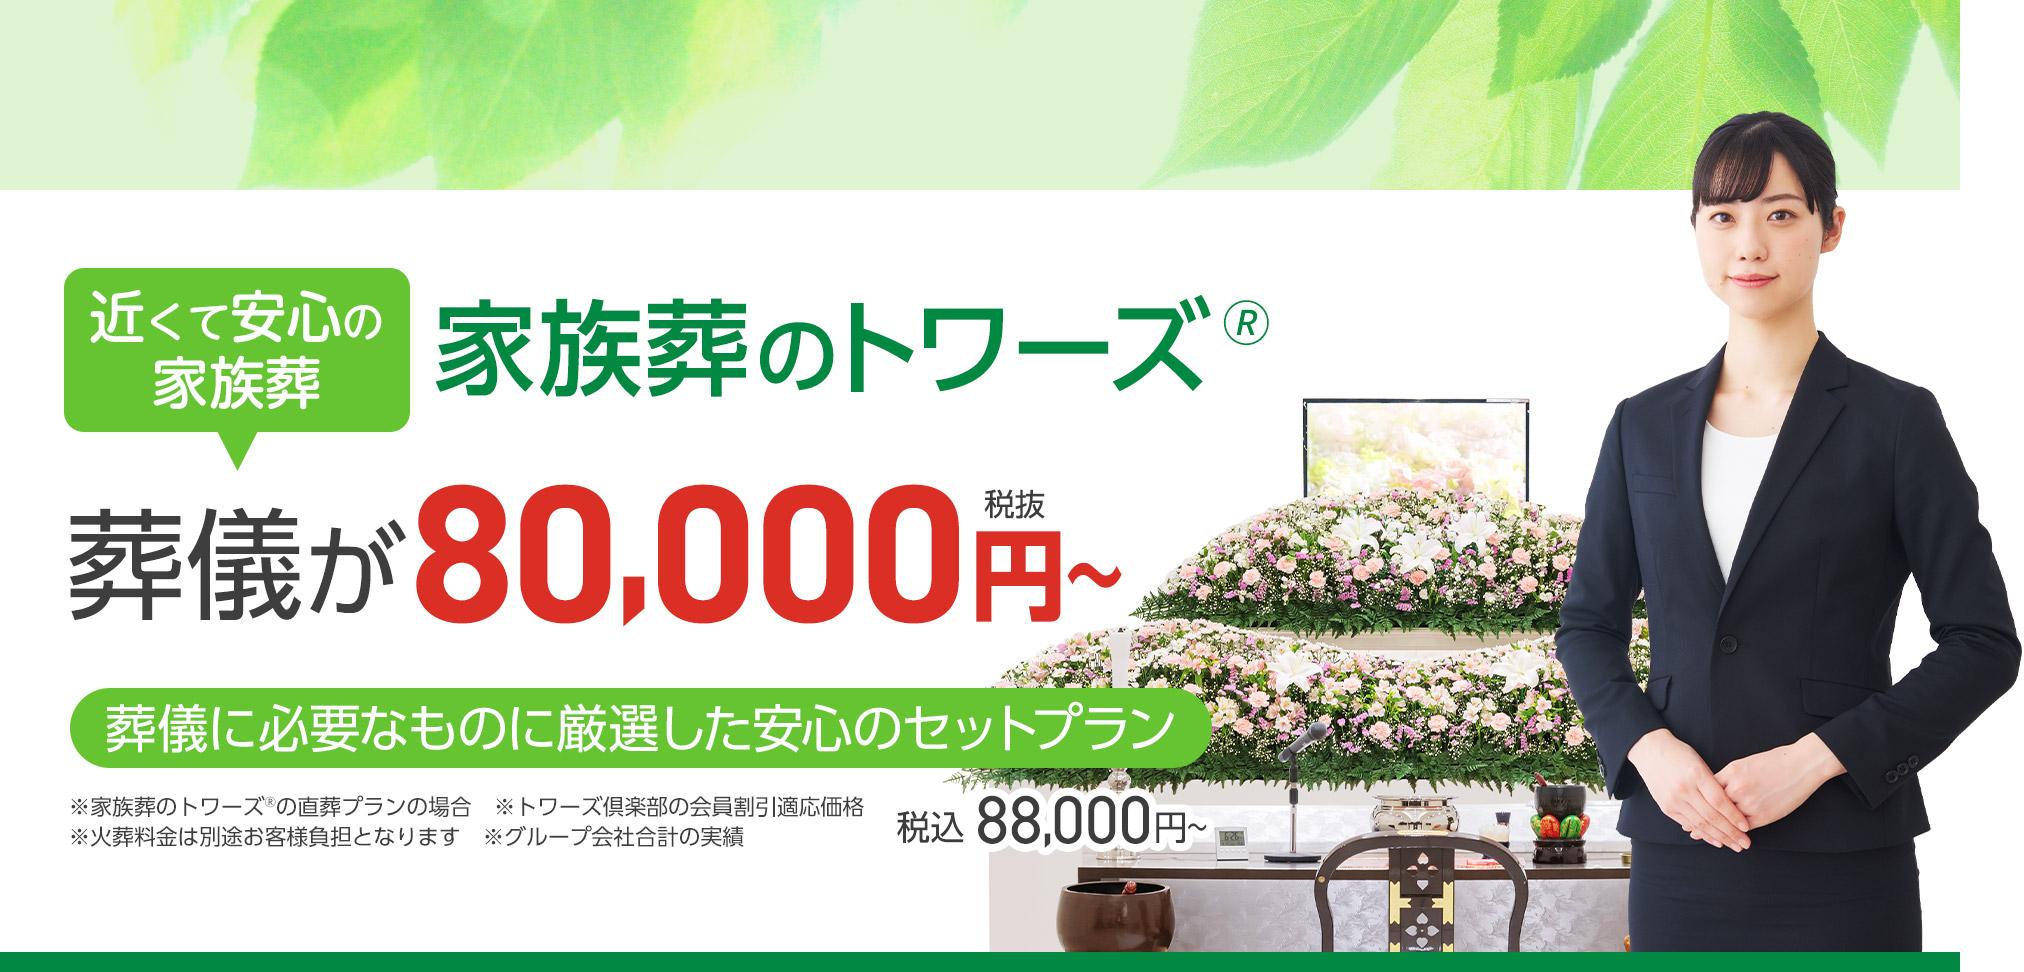 静岡市で葬儀・葬式・家族葬をお探しなら トワーズ 近くて安心の葬儀・家族葬が税込88,000円